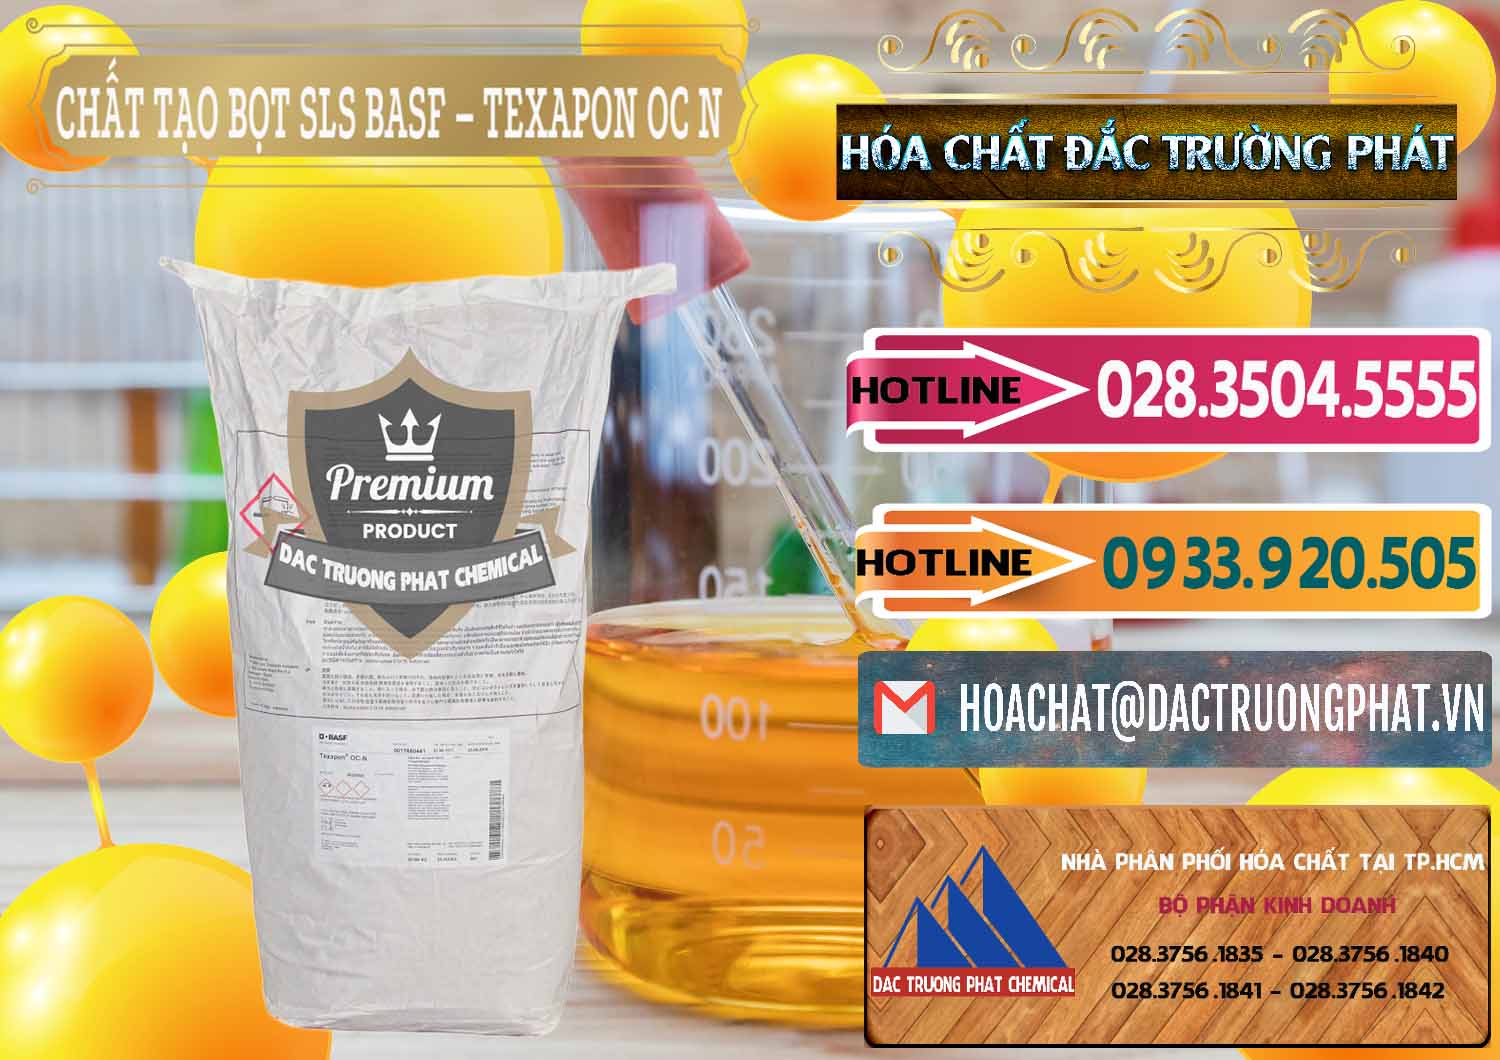 Cty chuyên kinh doanh _ bán Chất Tạo Bọt SLS - Sodium Lauryl Sulfate BASF Texapon OC N - 0049 - Nơi chuyên cung cấp - nhập khẩu hóa chất tại TP.HCM - dactruongphat.vn